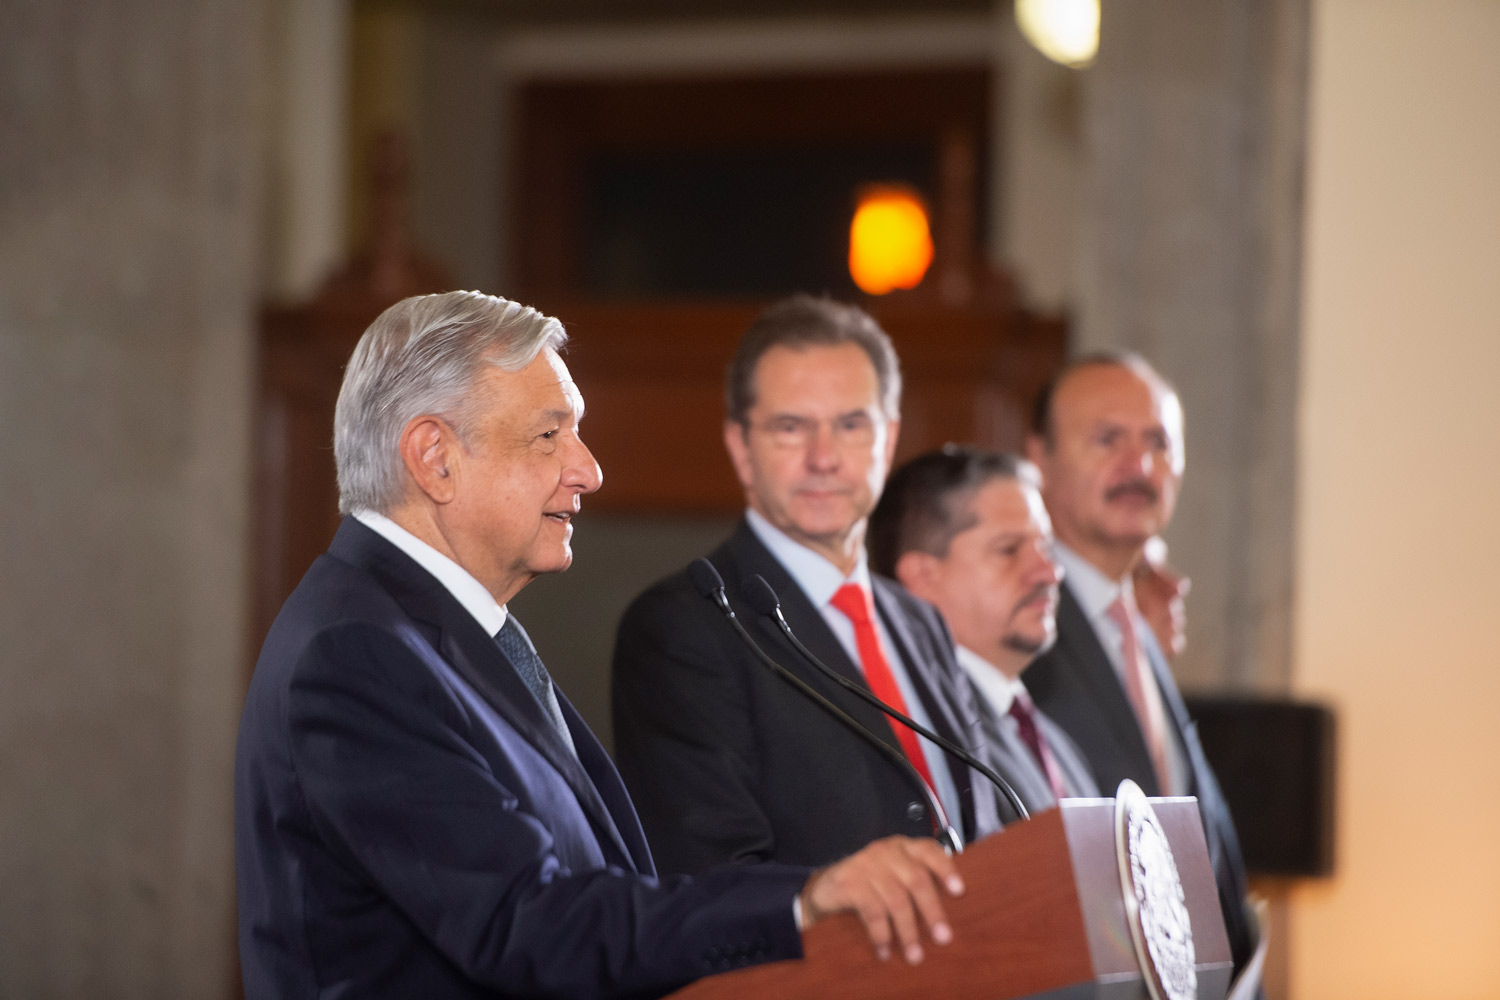 La educación es base del desarrollo; hace plenas nuestras libertades, afirma presidente López Obrador